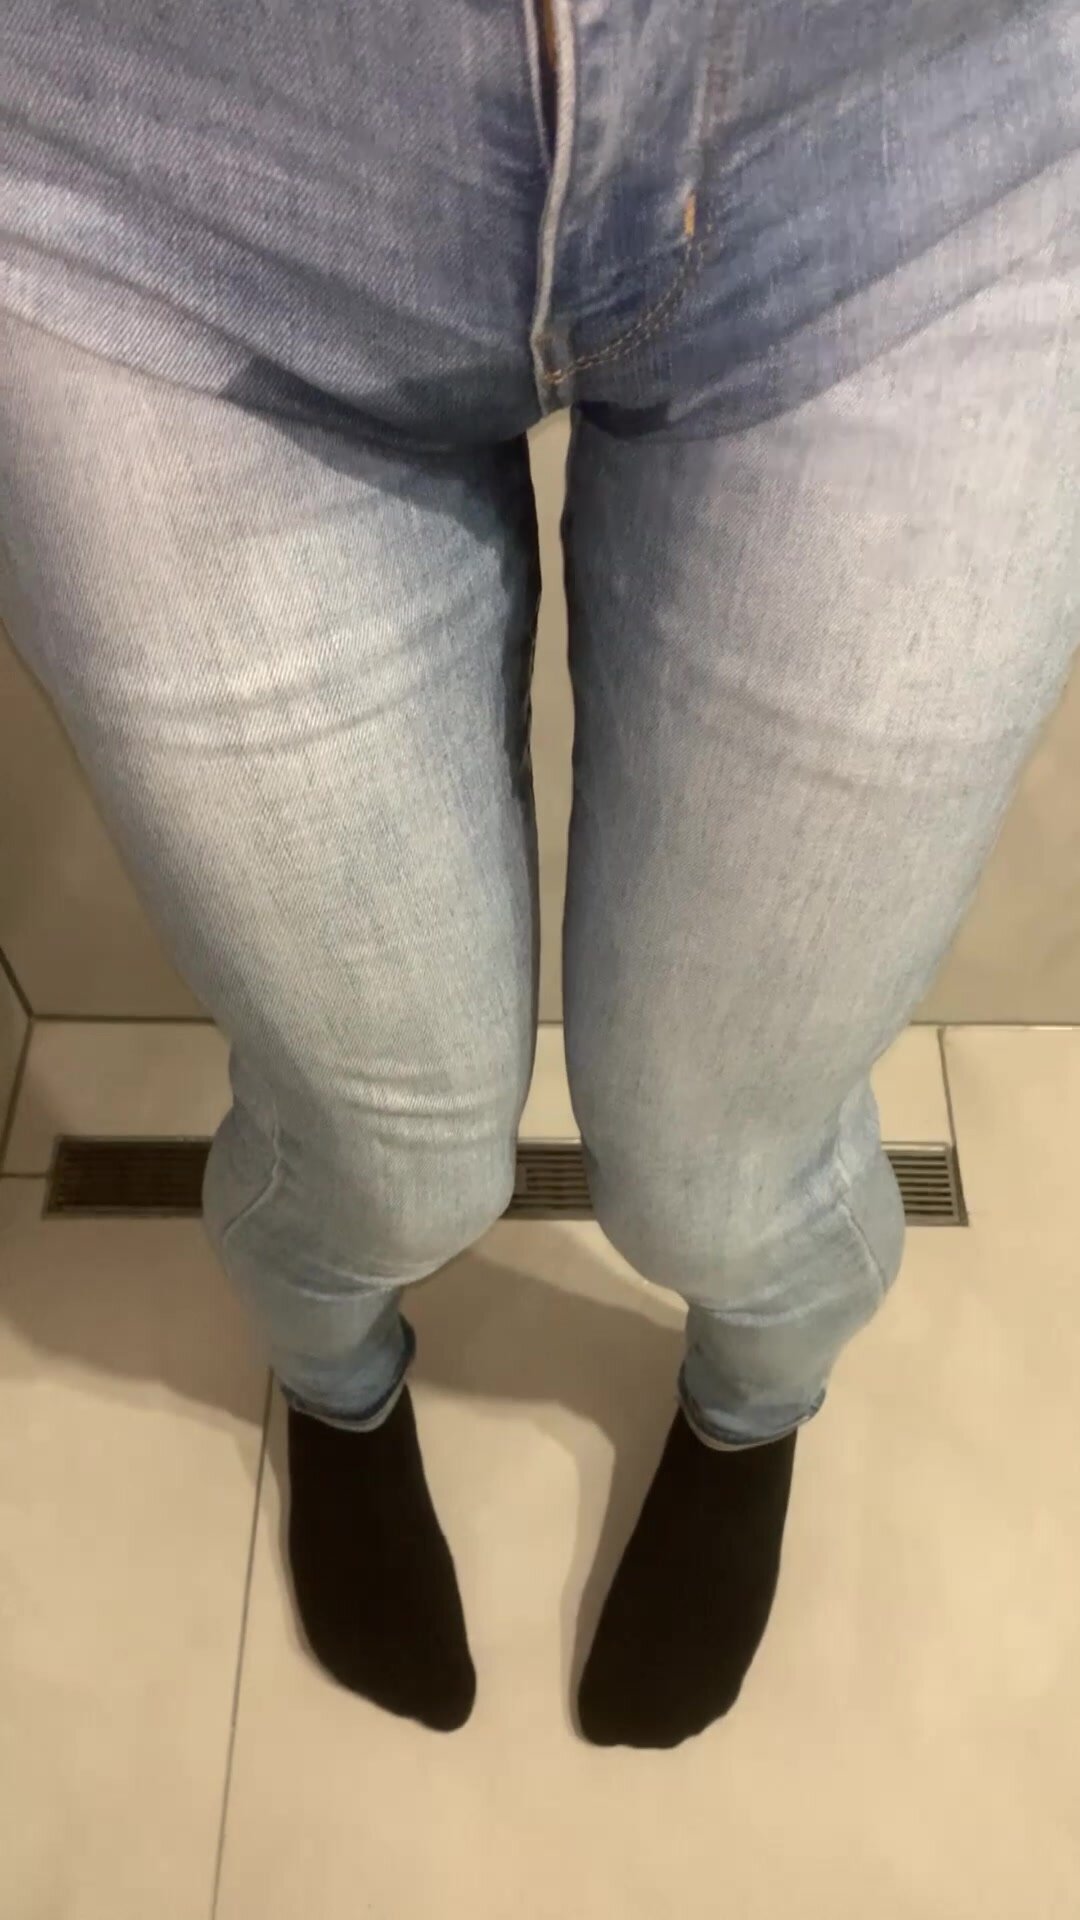 Asian bottom wetting light blue skinny jeans (part 2)